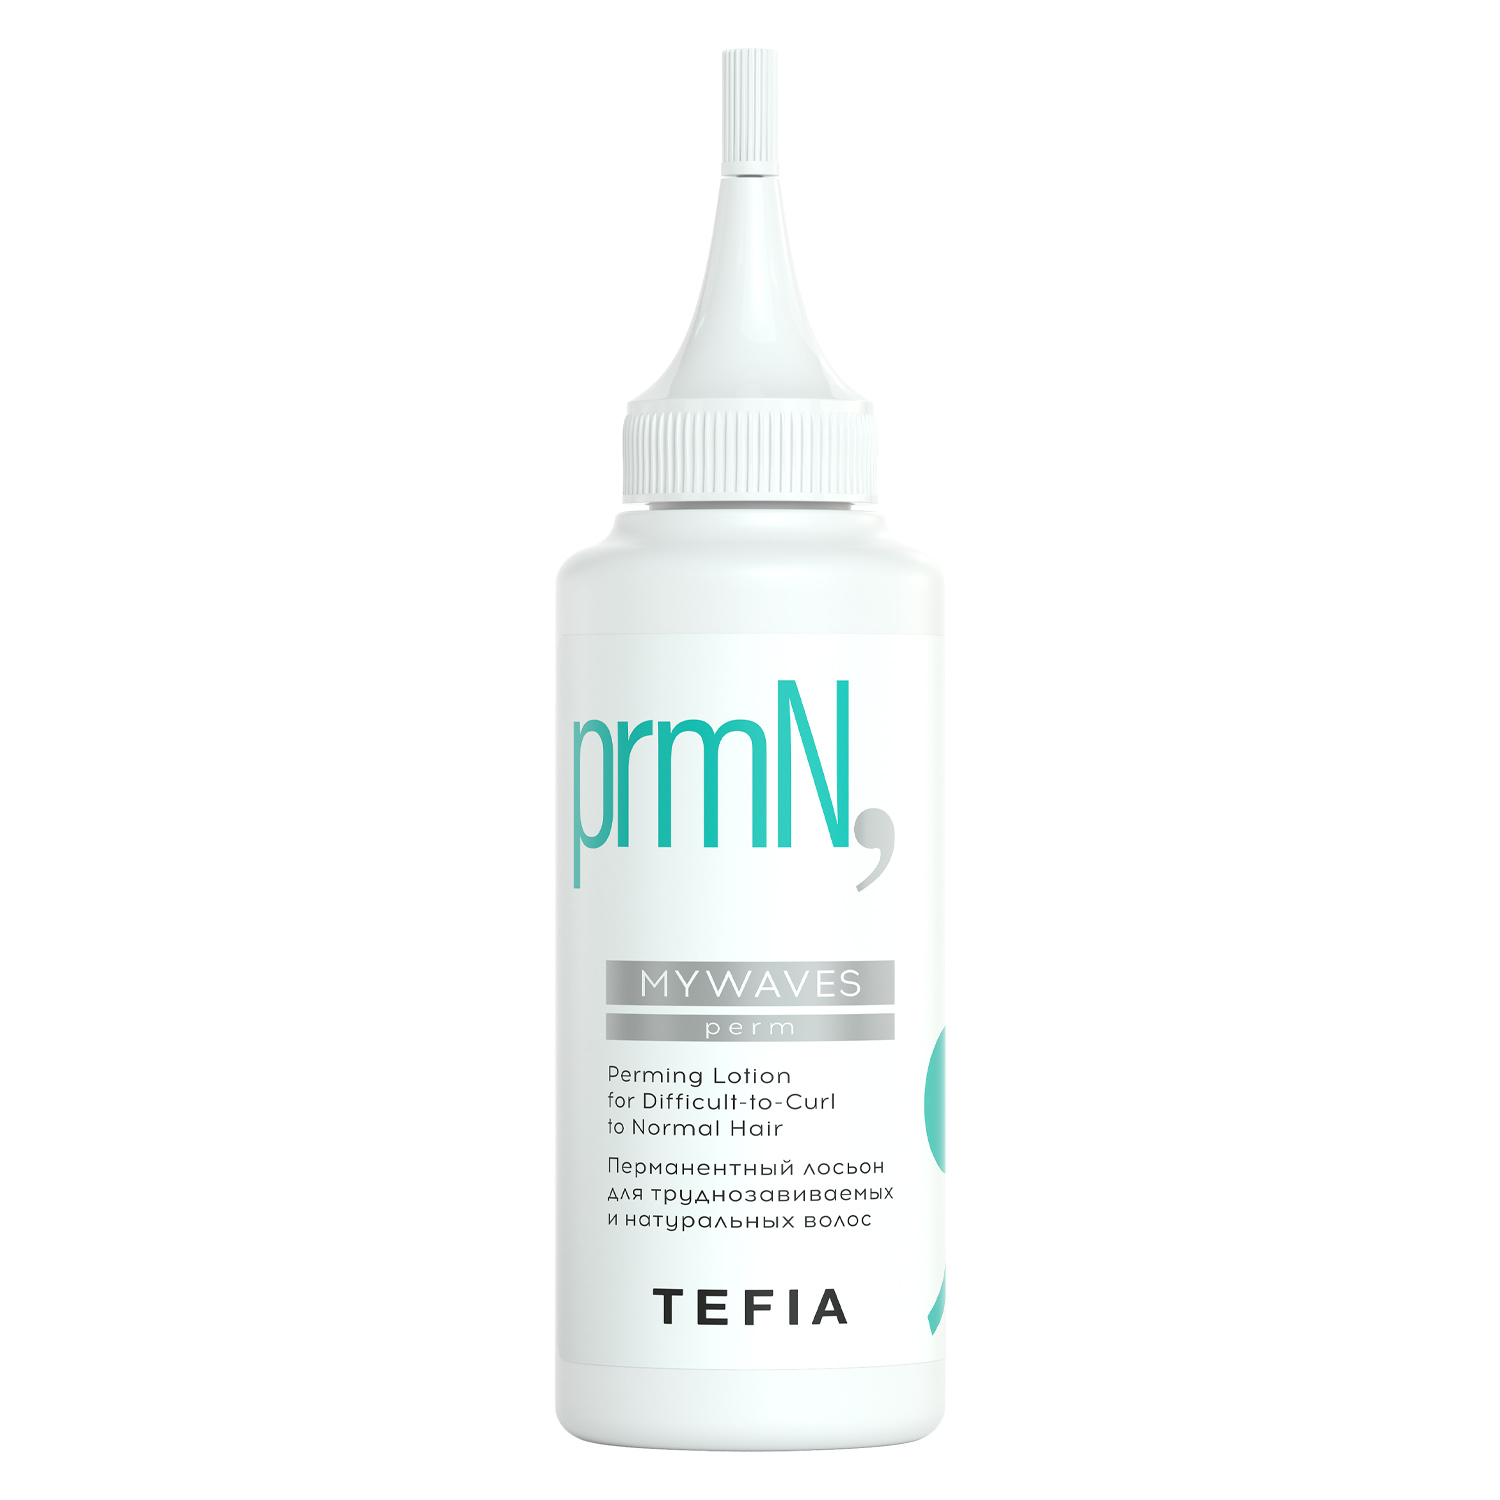 Tefia Перманентный лосьон для труднозавиваемых и натуральных волос, 120 мл (Tefia, Mywaves) tefia перманентный лосьон для окрашенных волос 120 мл tefia mywaves